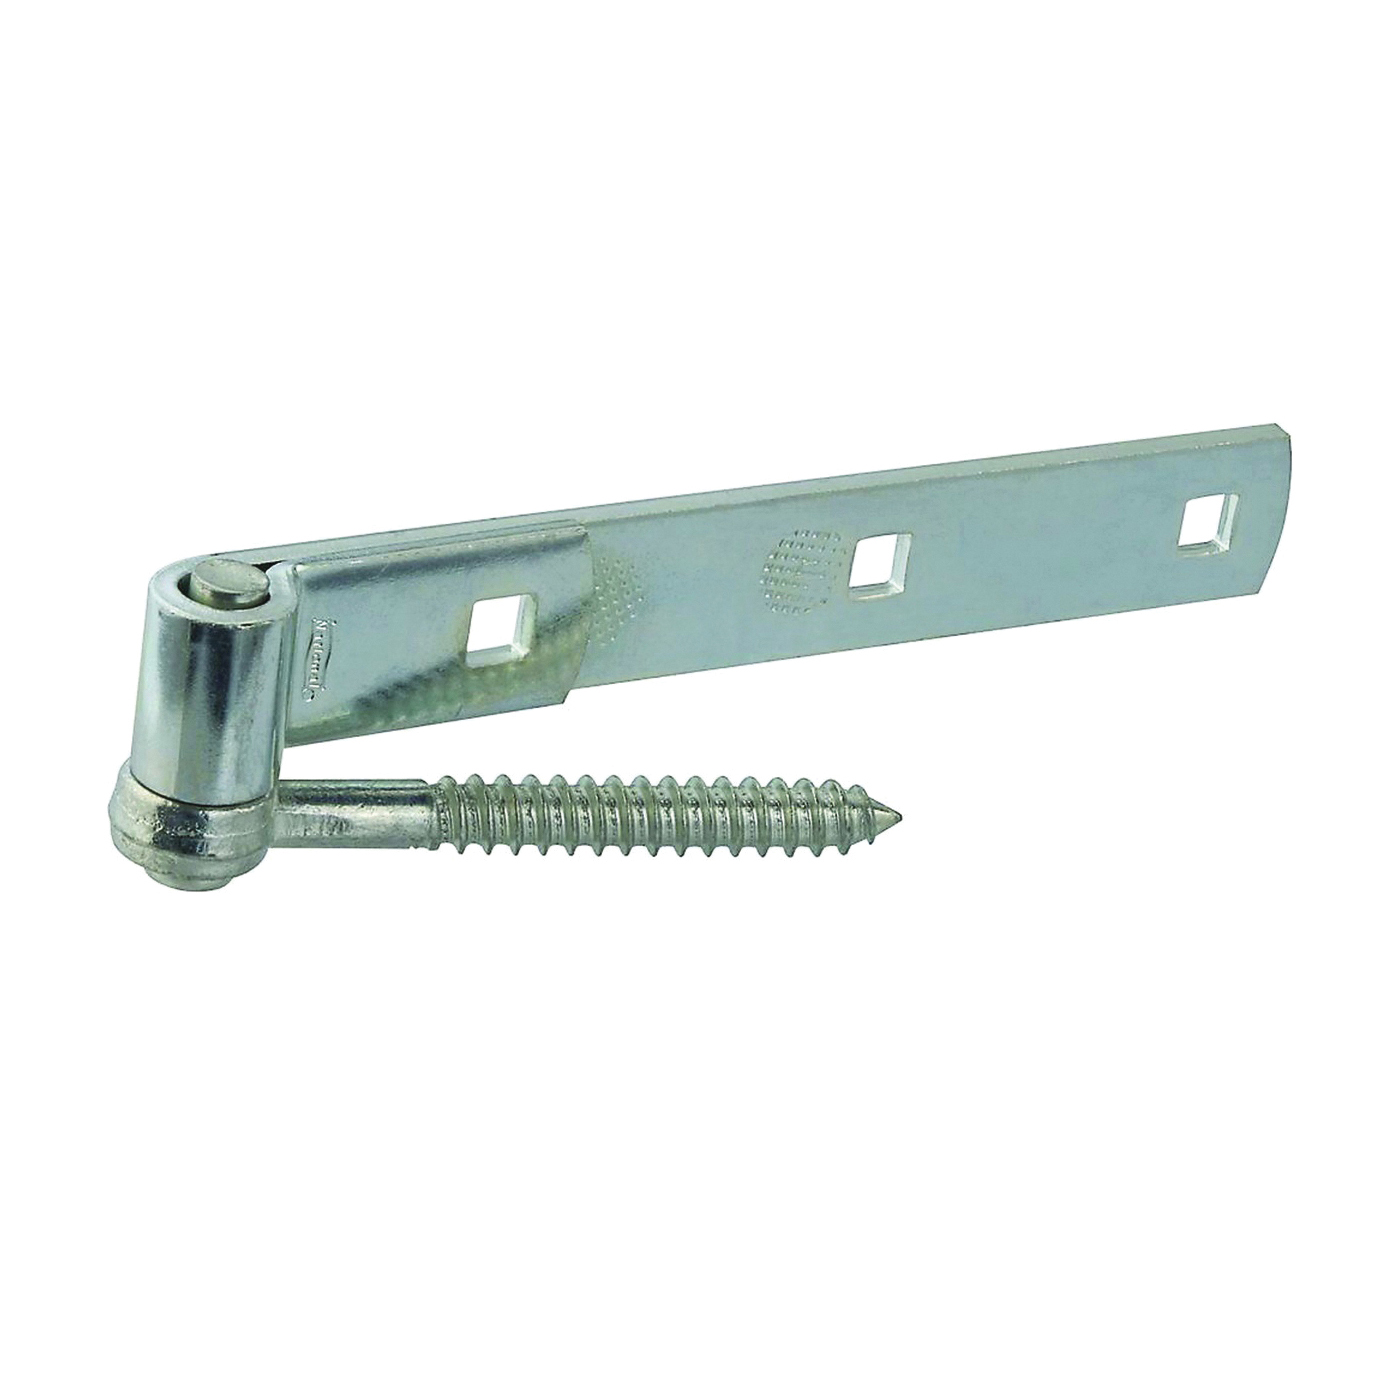 N129-726 Hook/Strap Hinge, 0.22 in Thick Leaf, Steel, Zinc, Screw Mounting, 150 lb